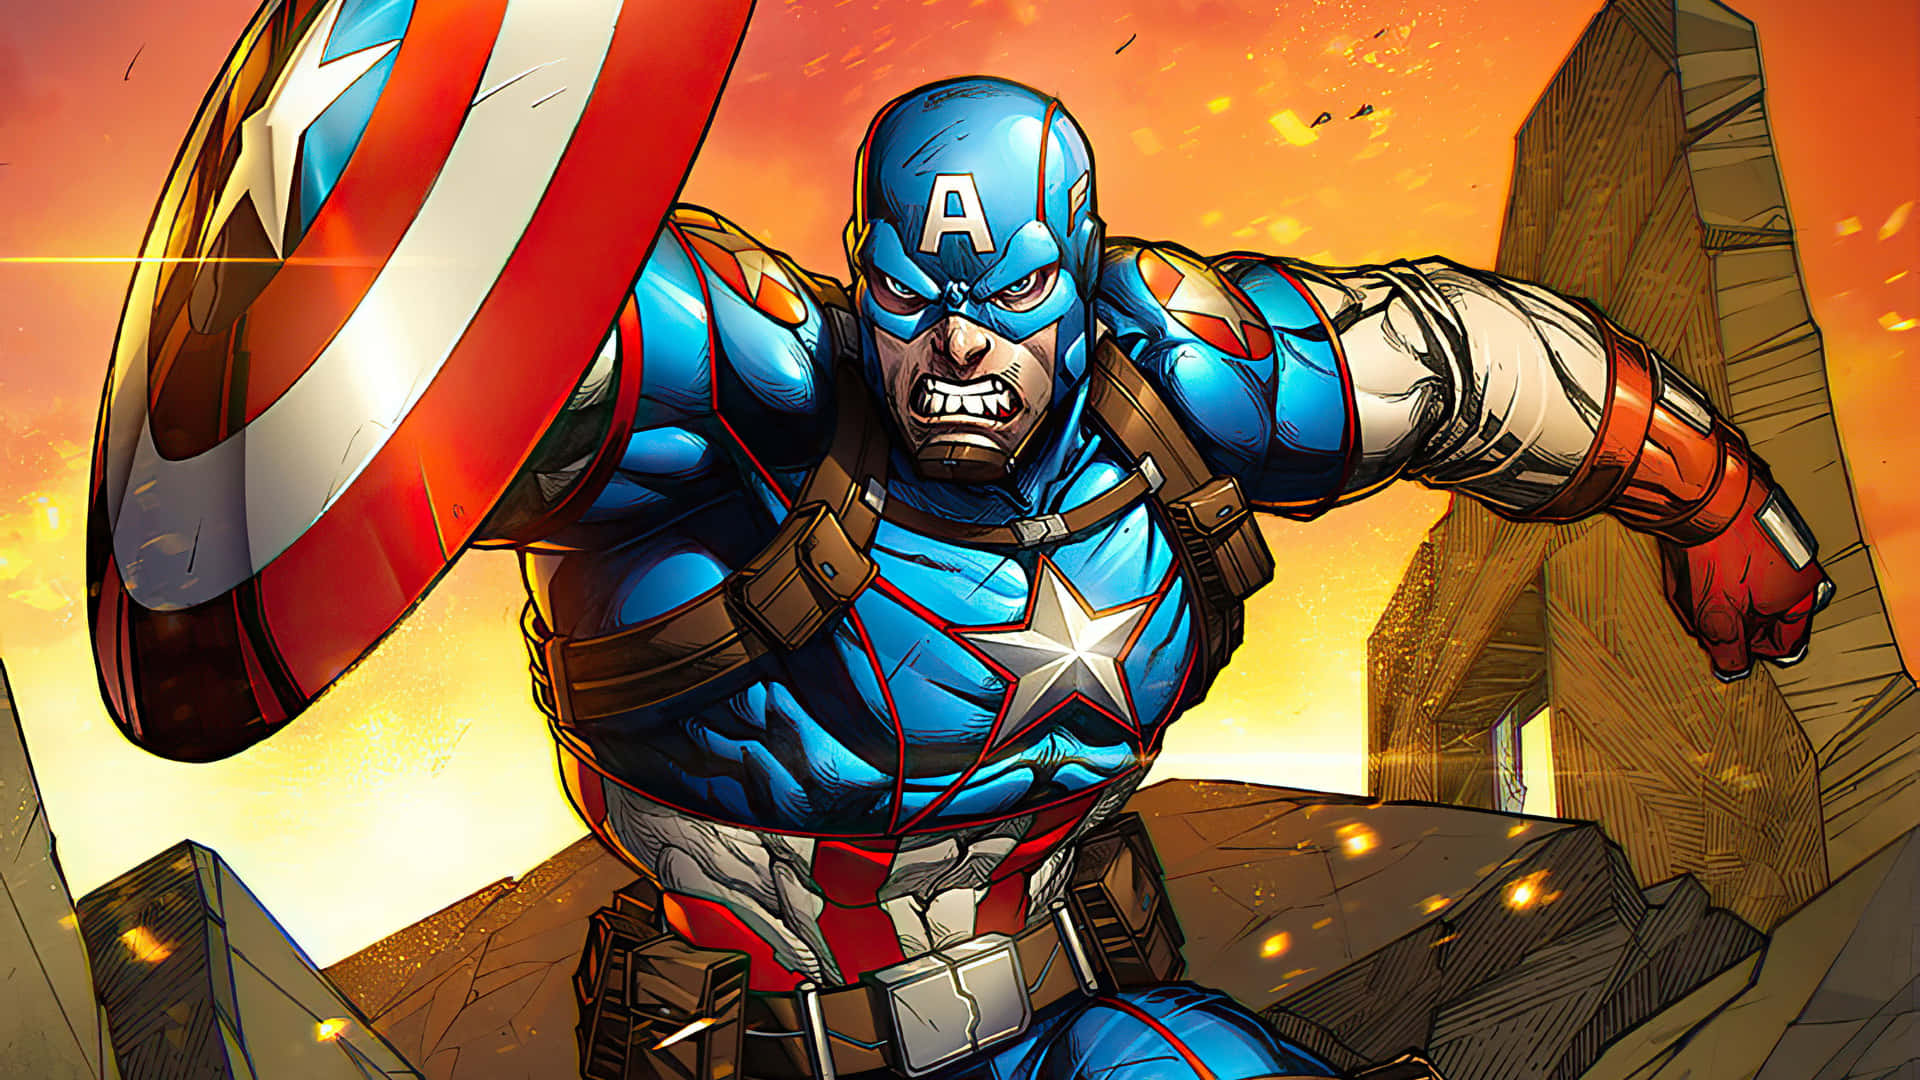 Feiern Sie Retro Superhelden ikonisch, Captain America dekoriert dieses Tapeten. Wallpaper